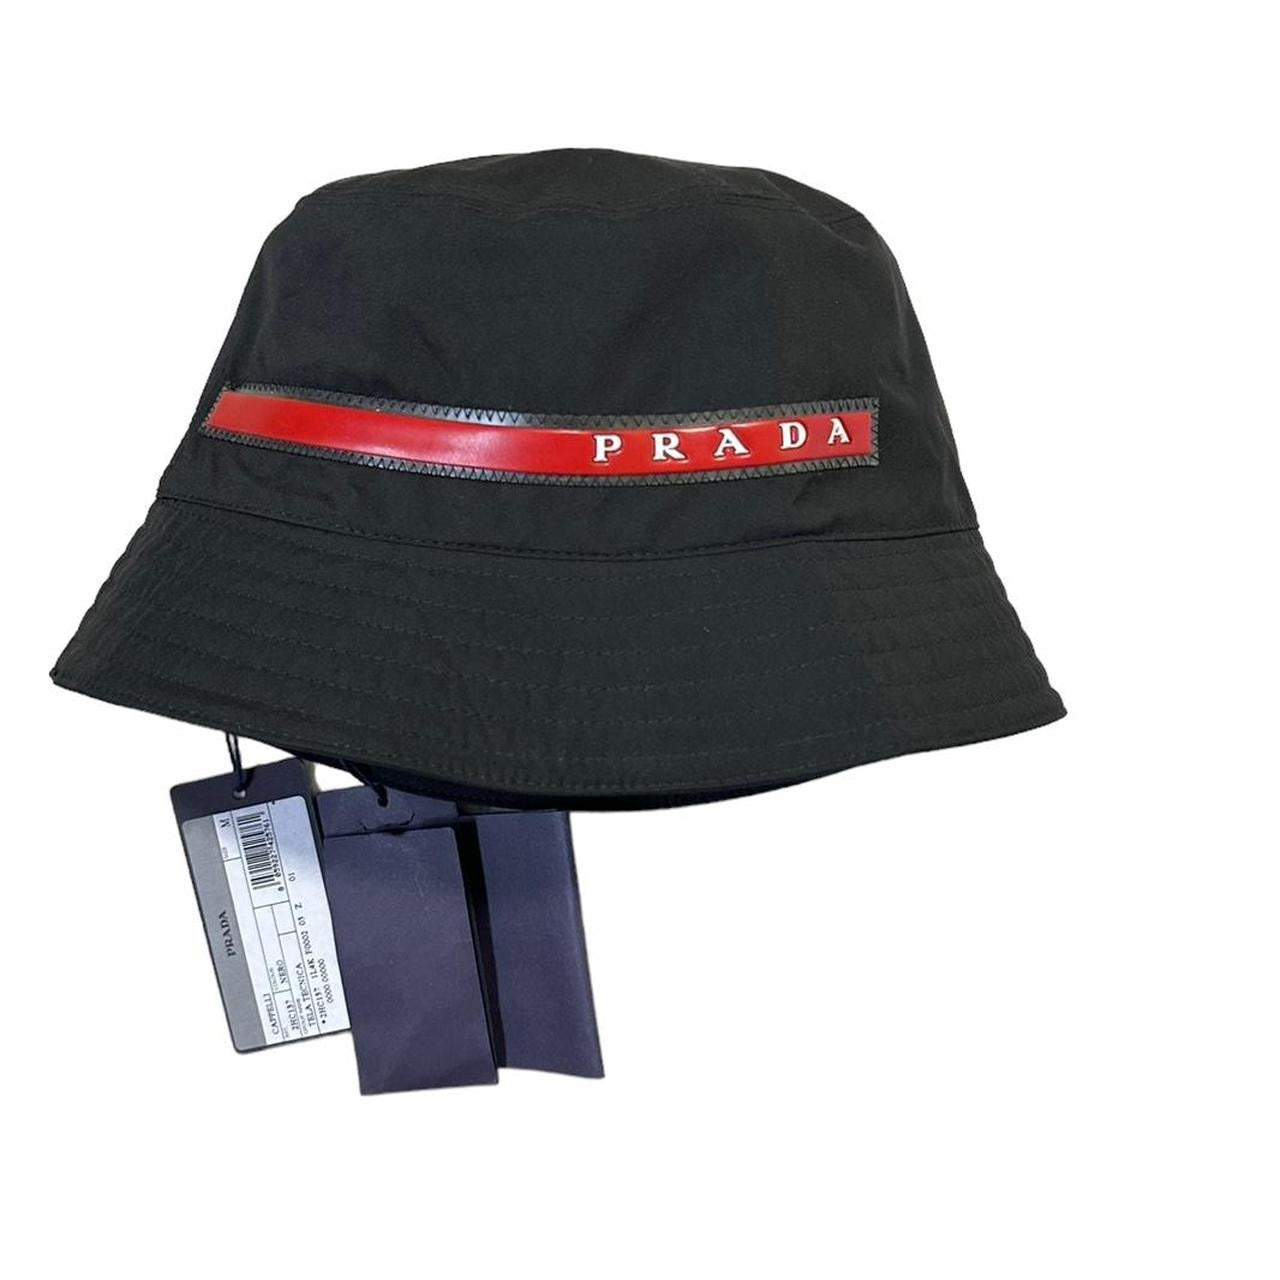 PRADA バケットハット - 帽子